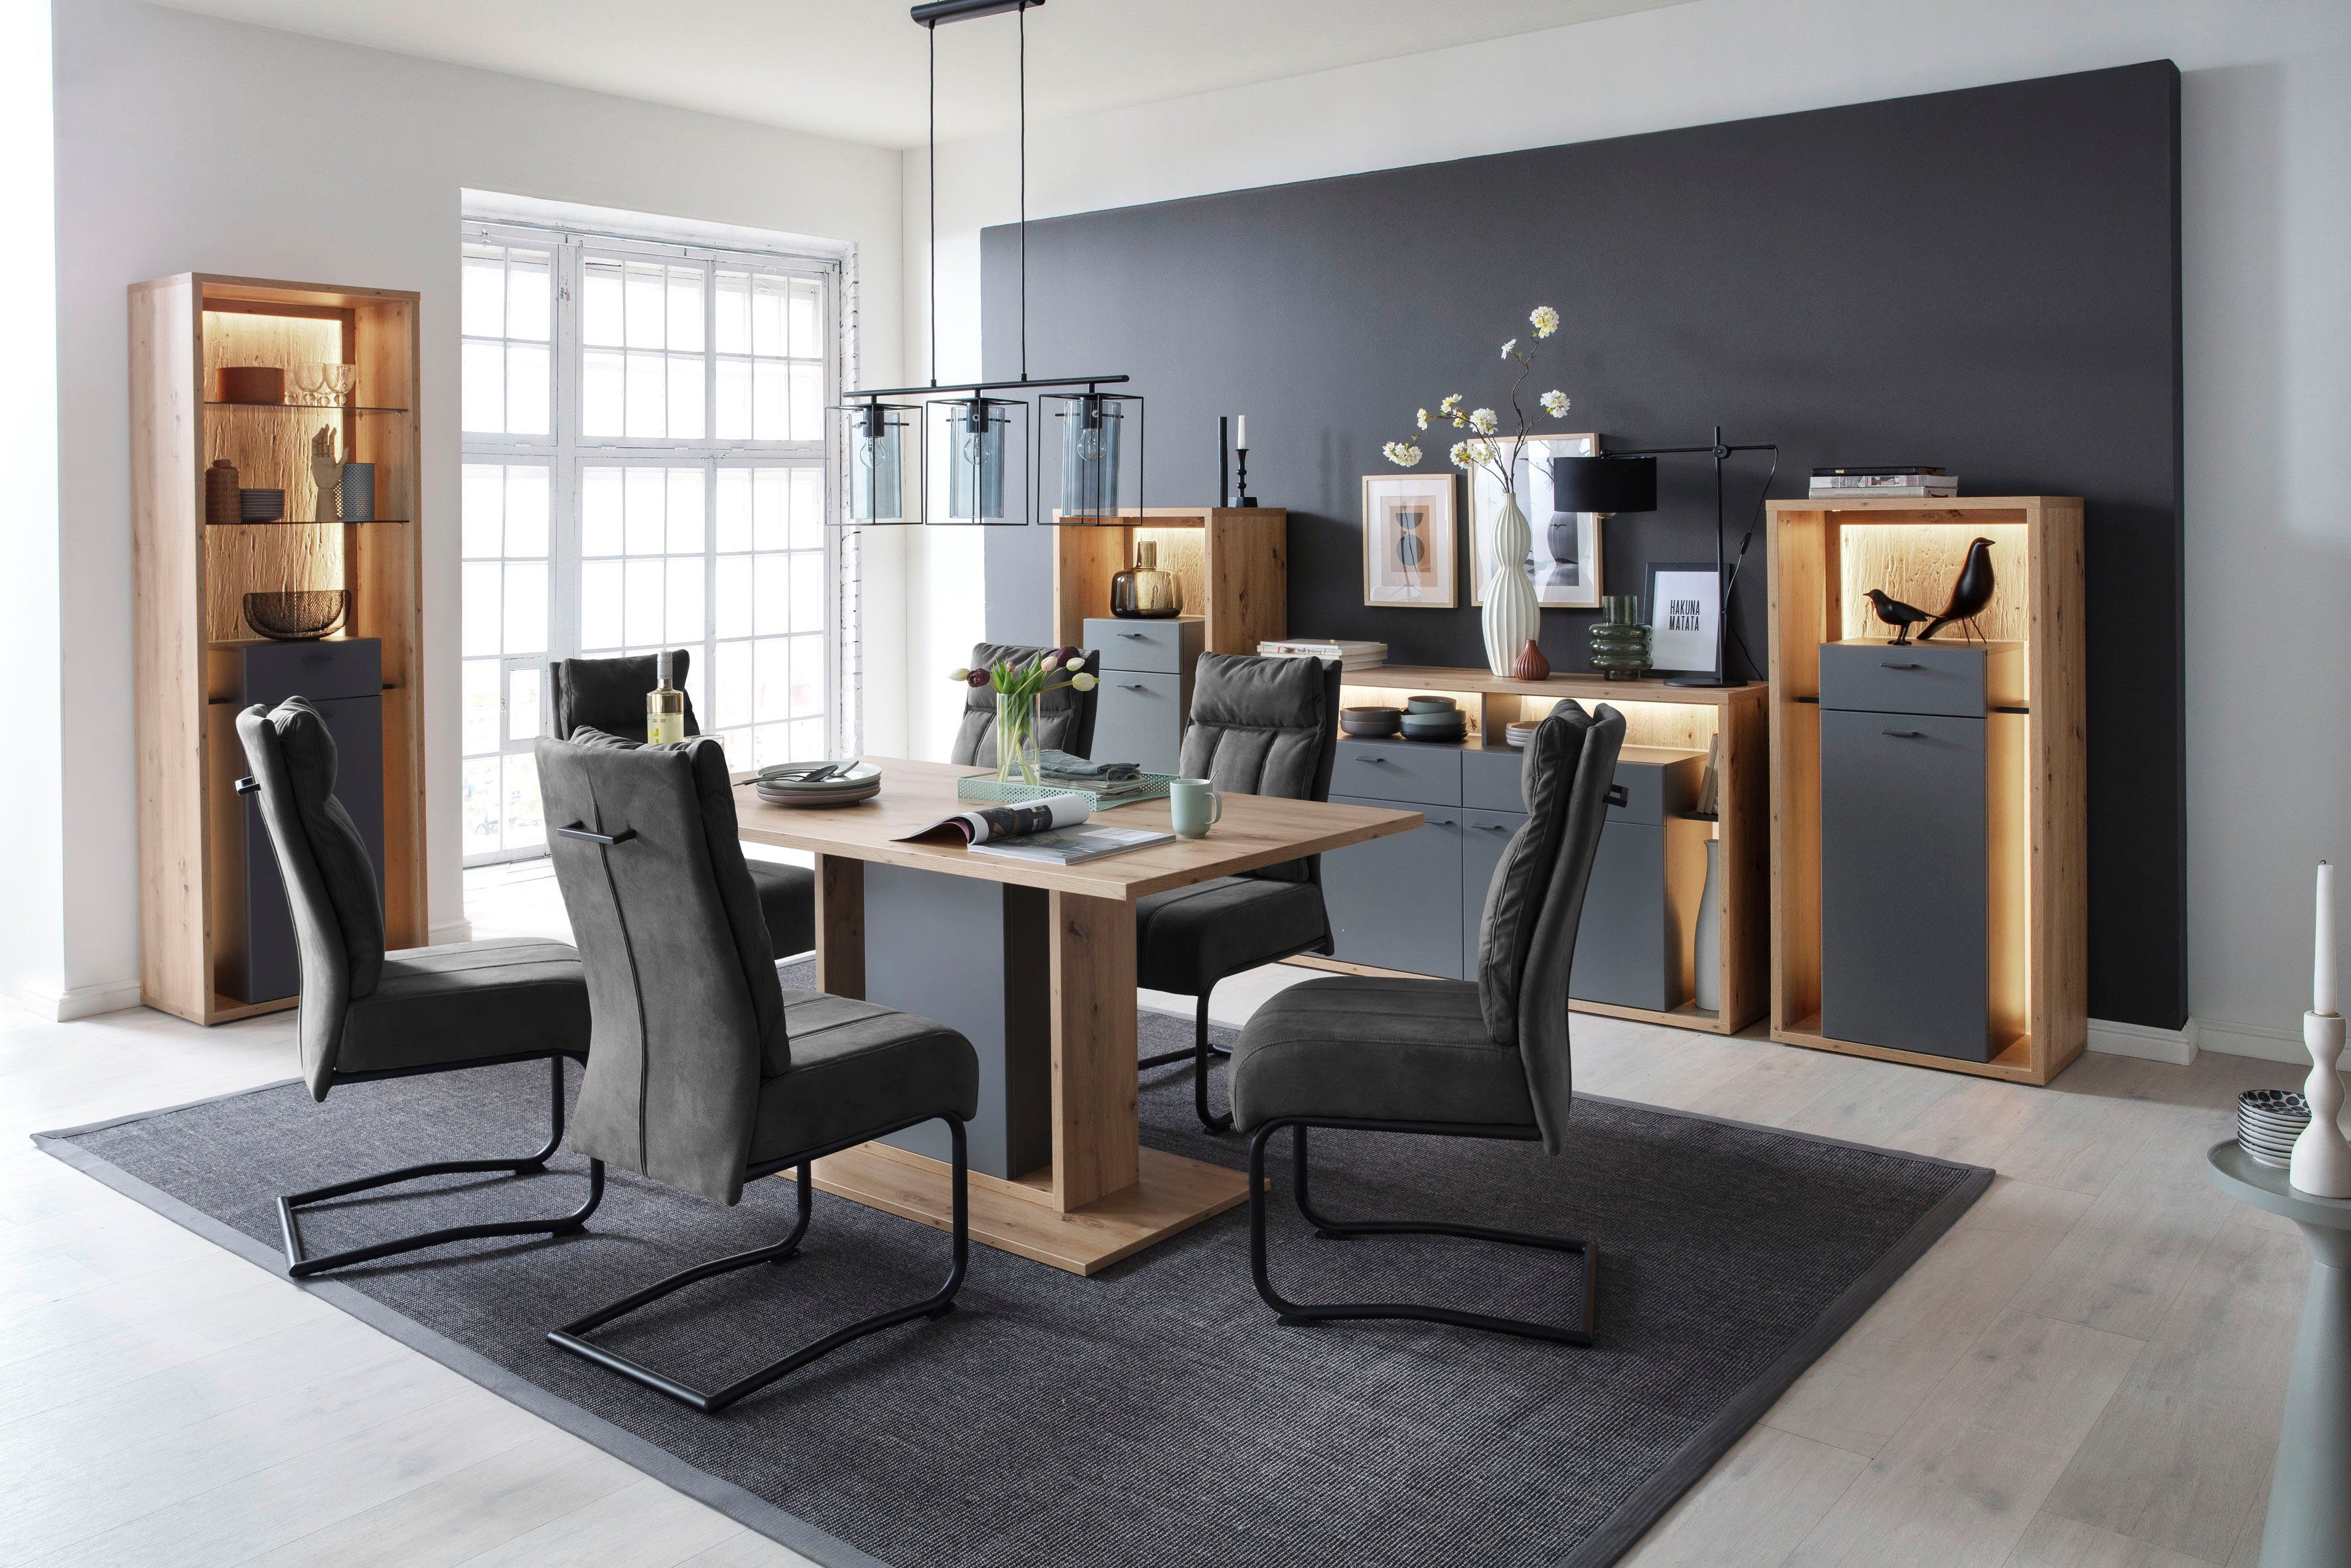 Duplicaat stroomkring spek MCA furniture Eettafel Lizzano Landelijke stijl modern, tot 80 kg  belastbaar, tafel 160 cm breed makkelijk besteld | OTTO